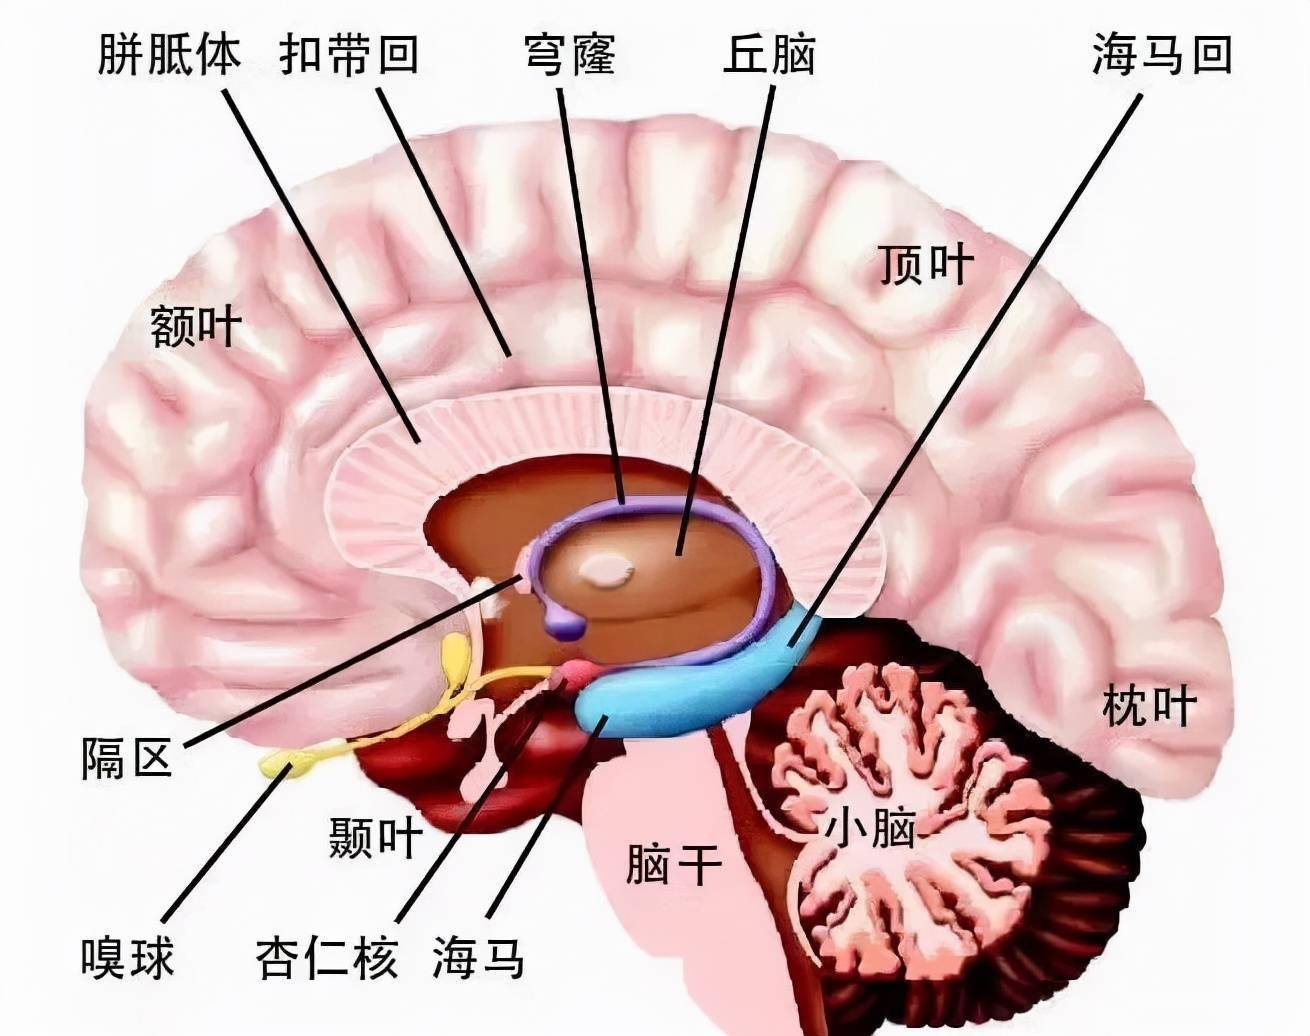 脑结构示意图与功能图片